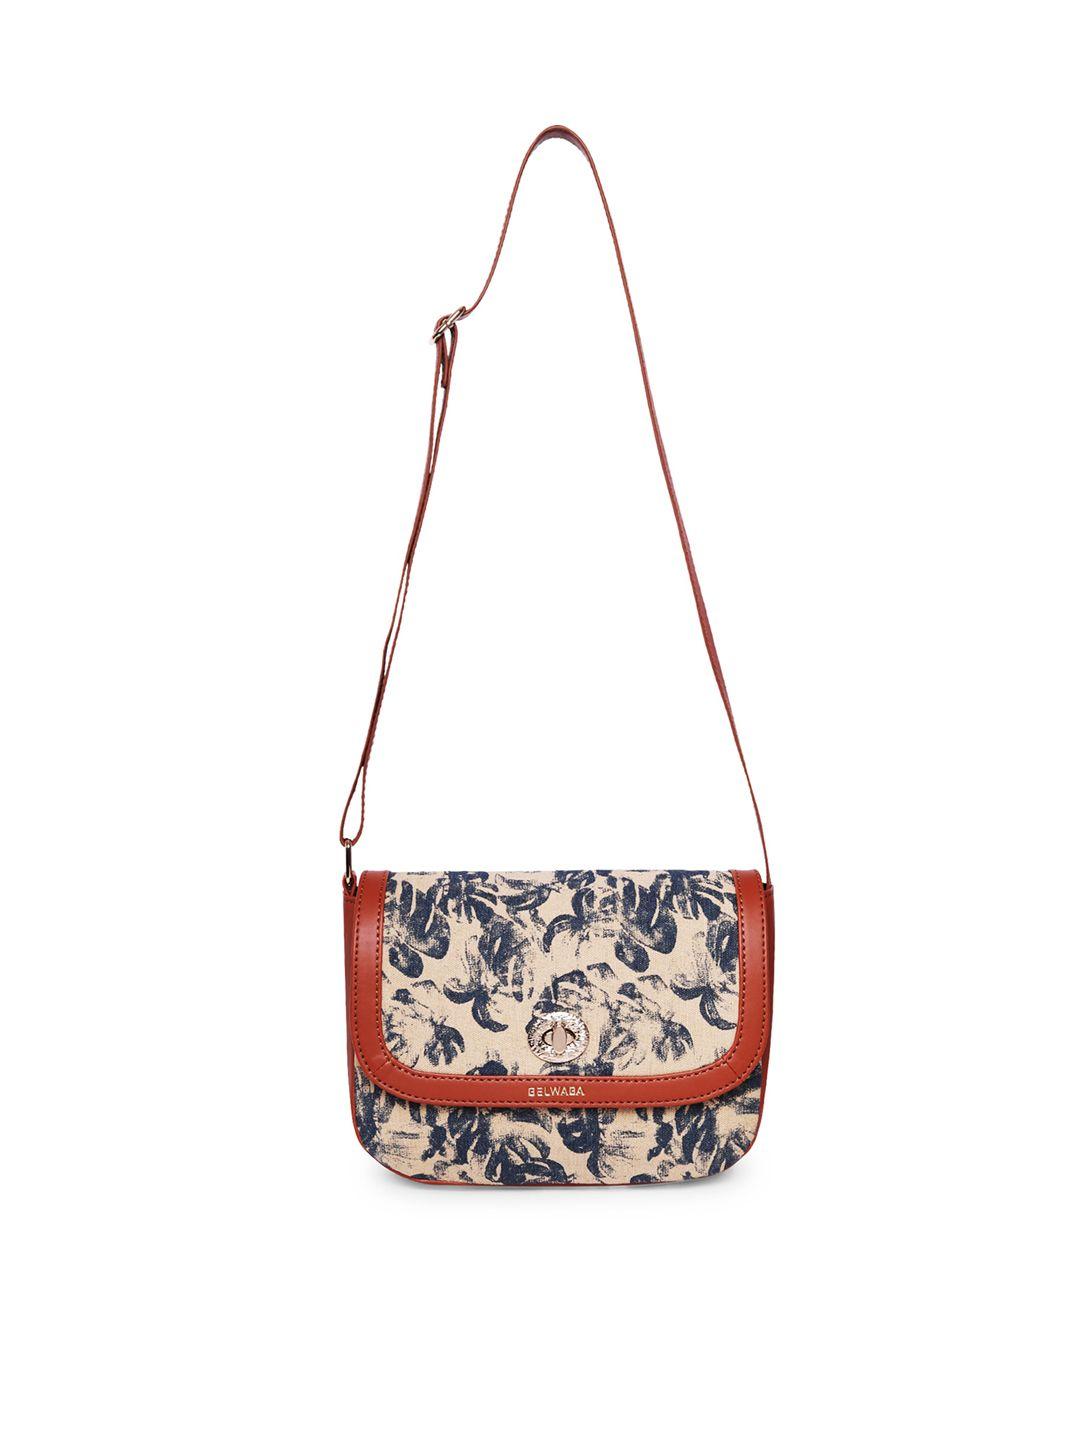 belwaba beige floral embellished structured sling bag with tasselled